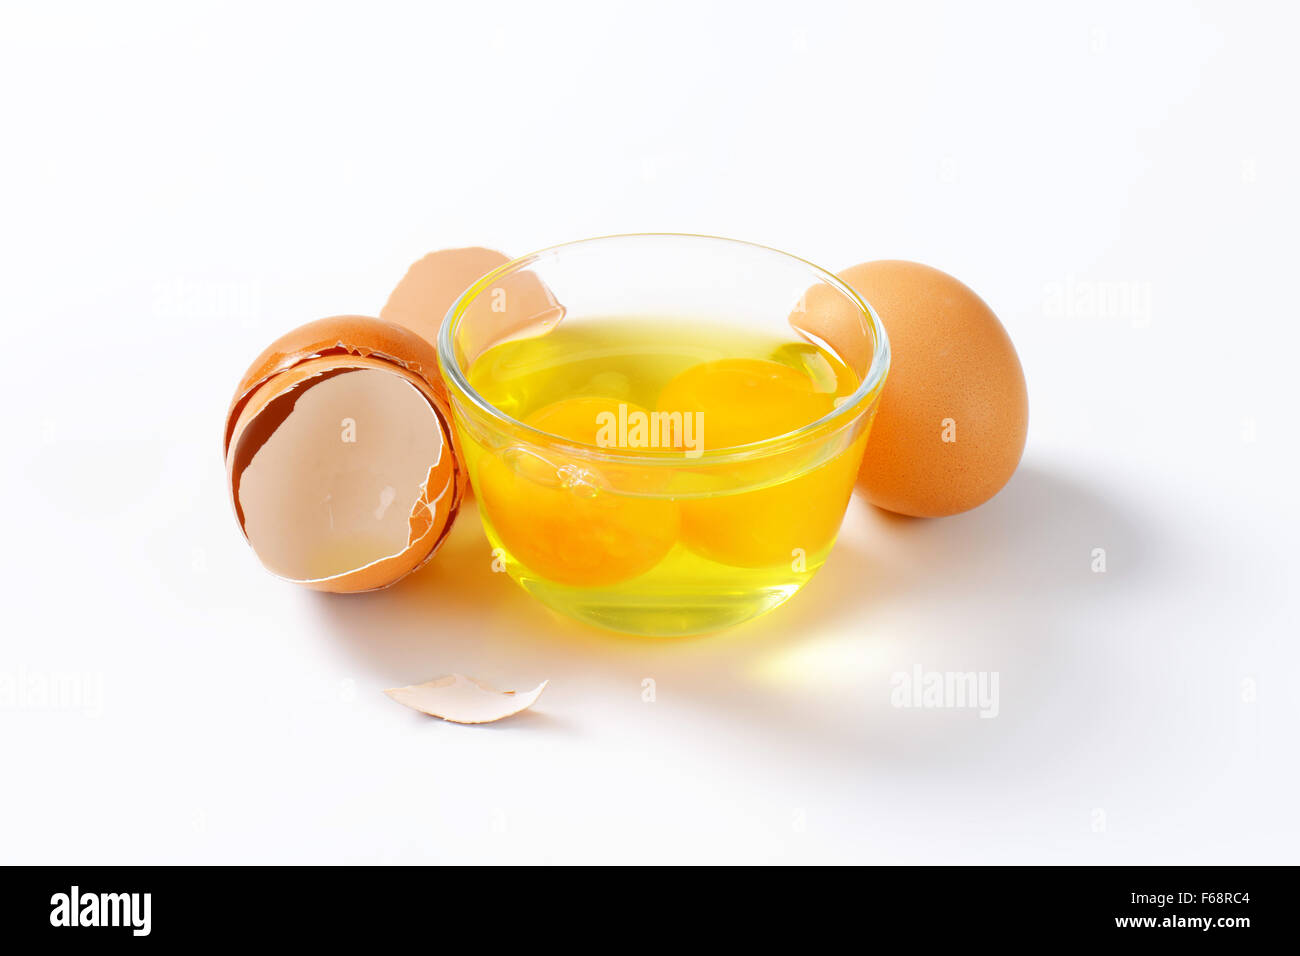 Y yemas de huevo fresco en el tazón de vidrio, un huevo entero y cáscaras de huevo vacías Foto de stock